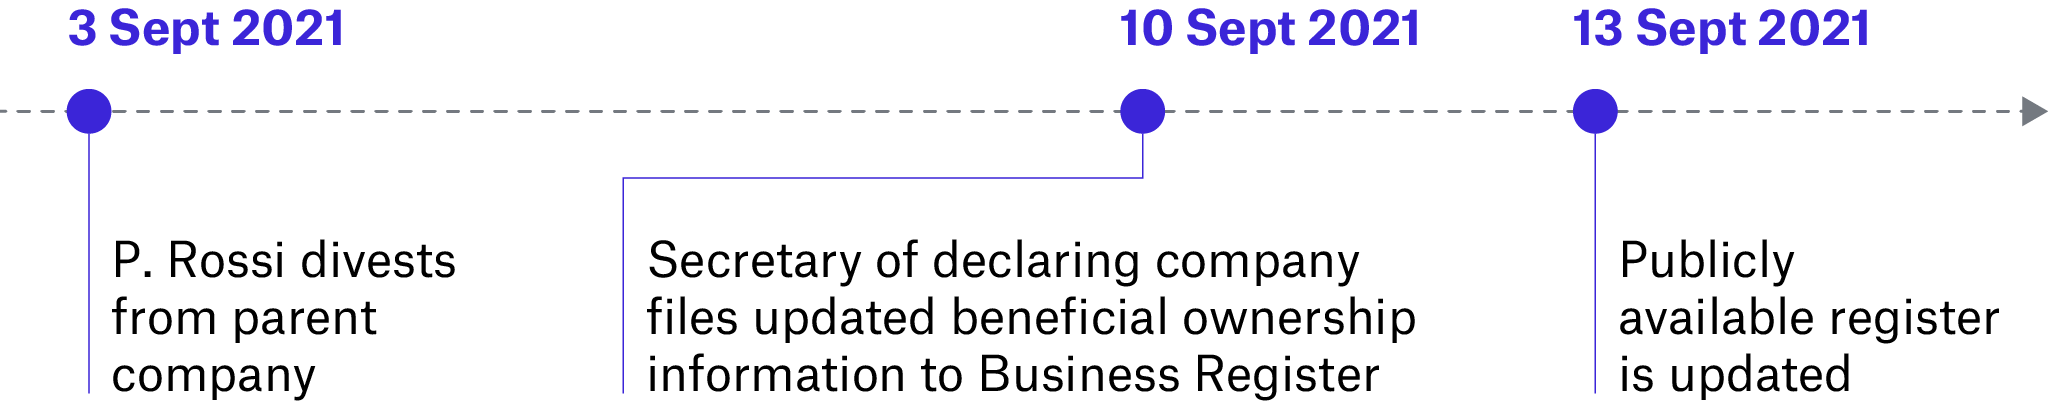 Figure 2. Timeline of information flow